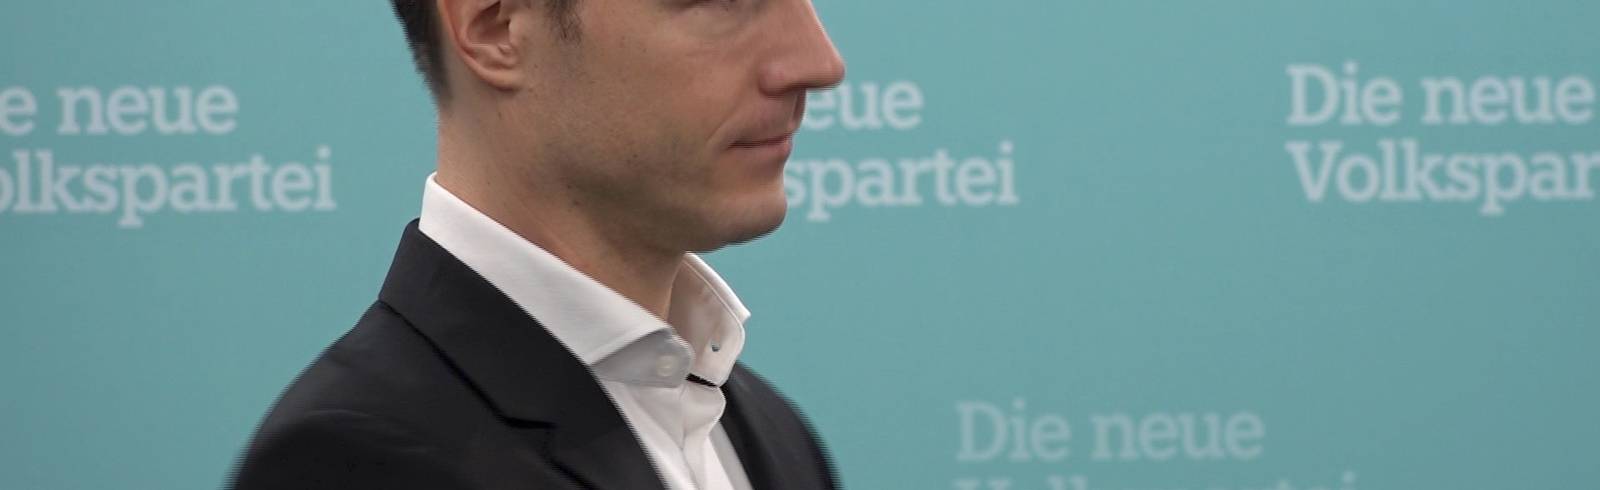 ÖVP Wien hat Fragen an kommenden SPÖ-Chef